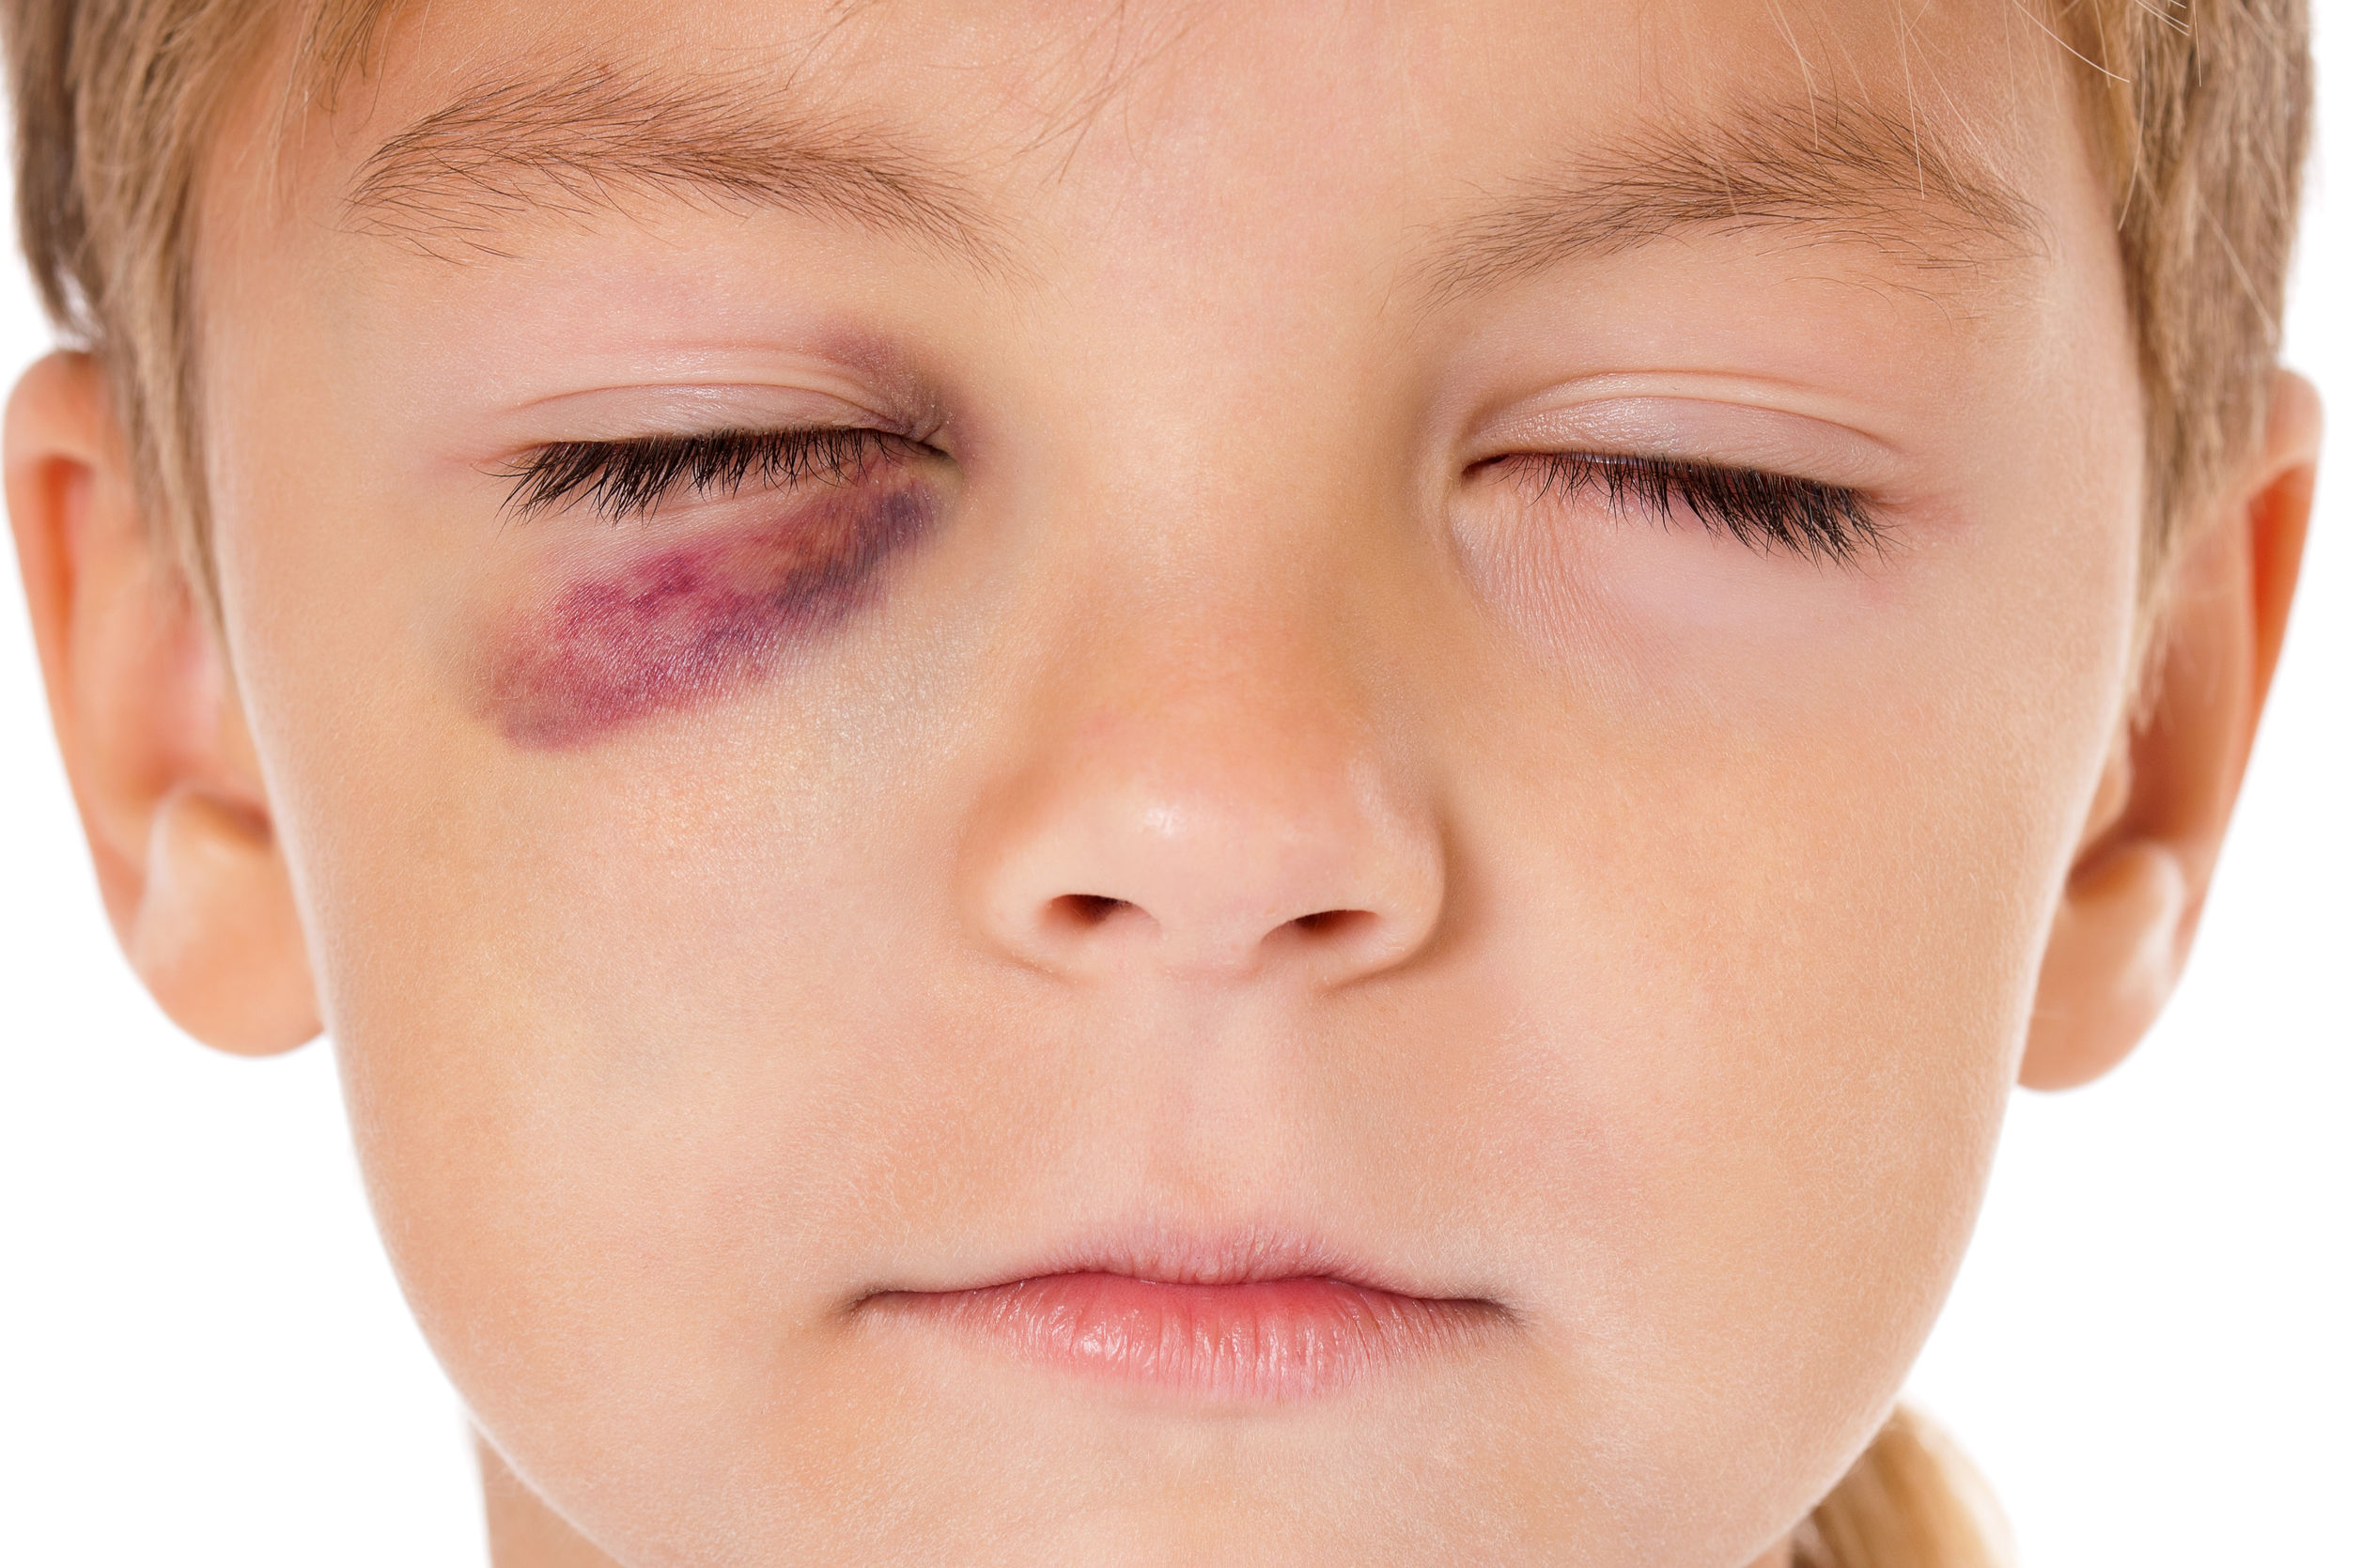 Acidentes oculares em crianças.